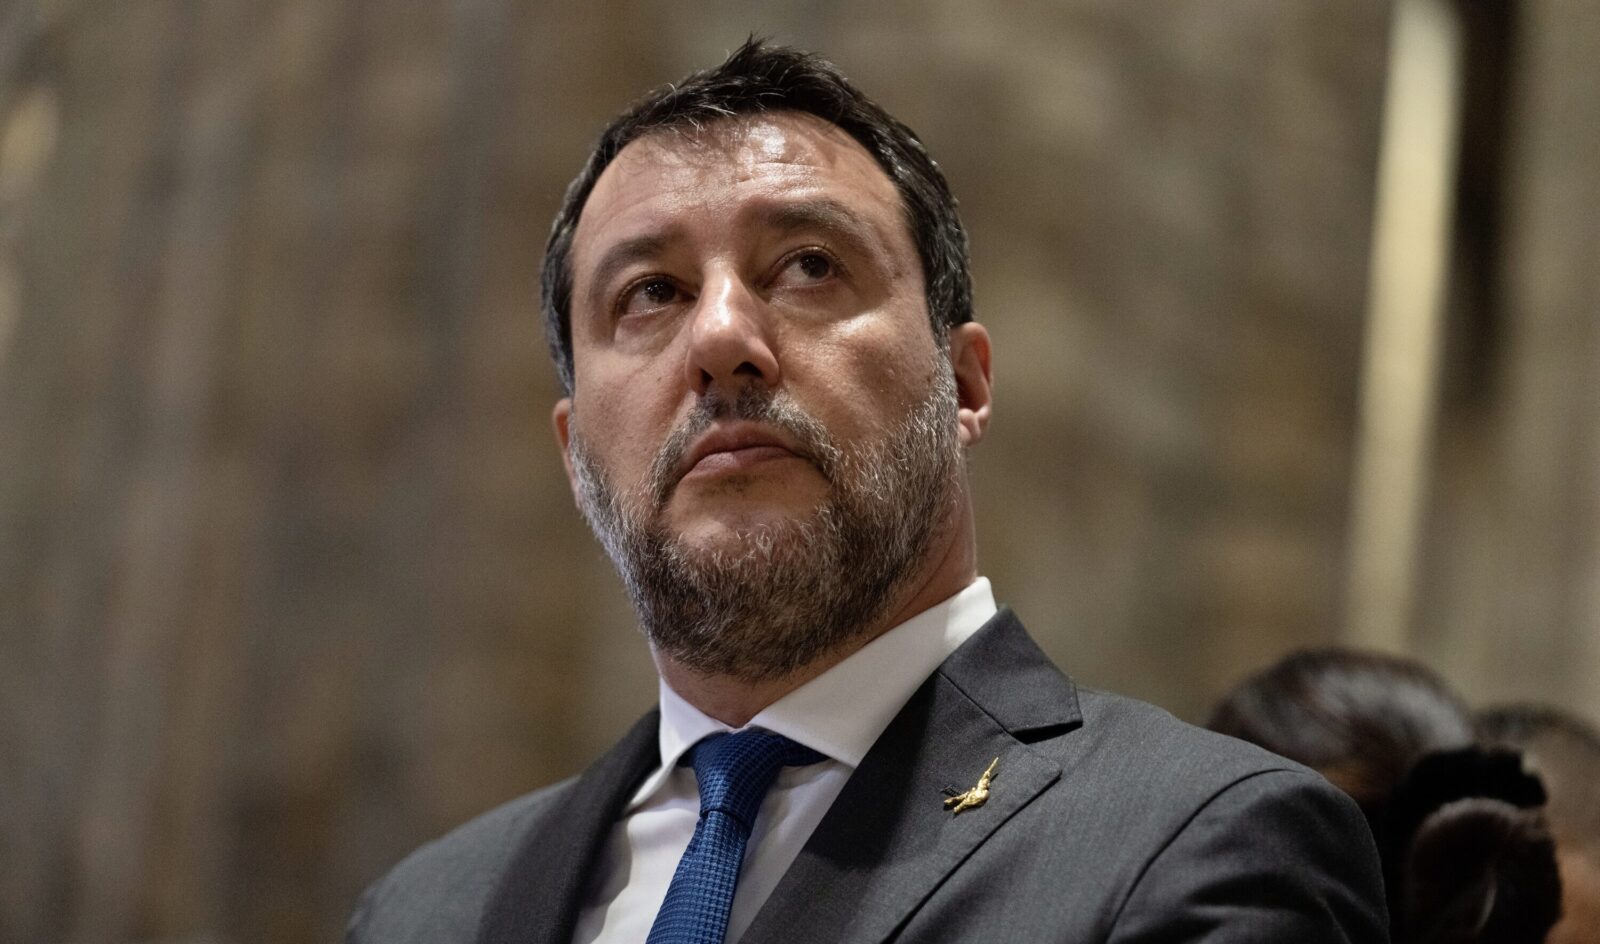 Confermato lo sciopero generale: i sindacati umiliano Salvini